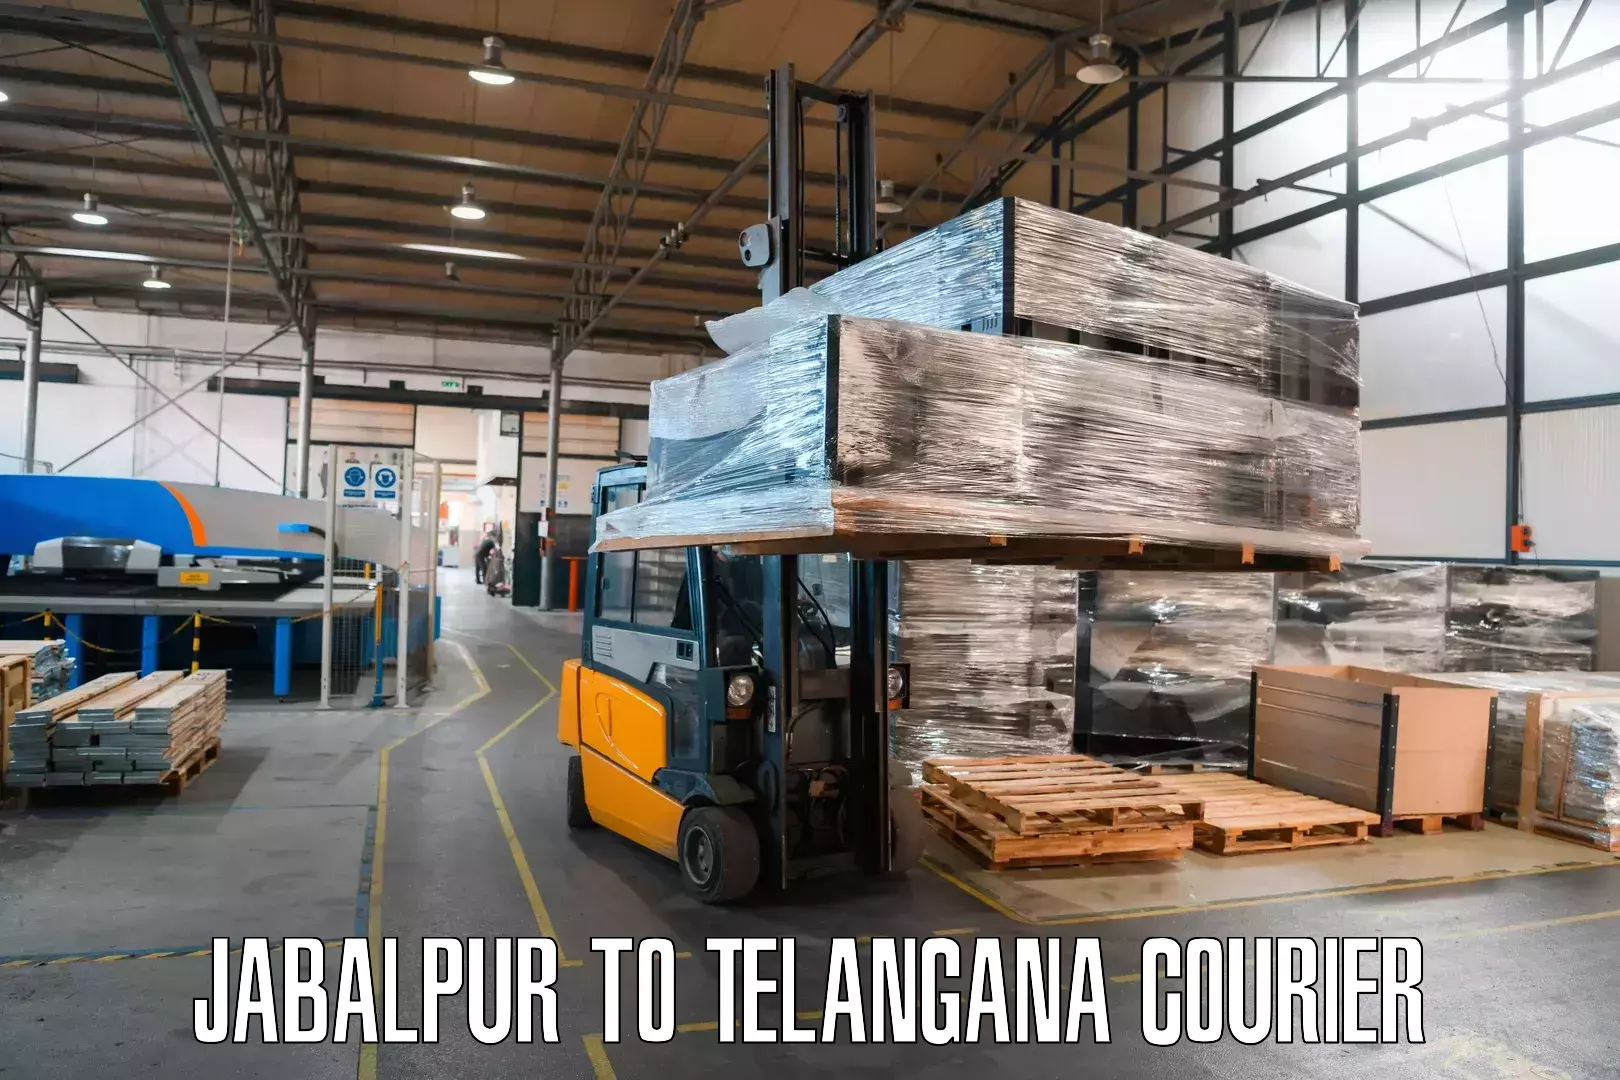 E-commerce shipping partnerships Jabalpur to Jagtial